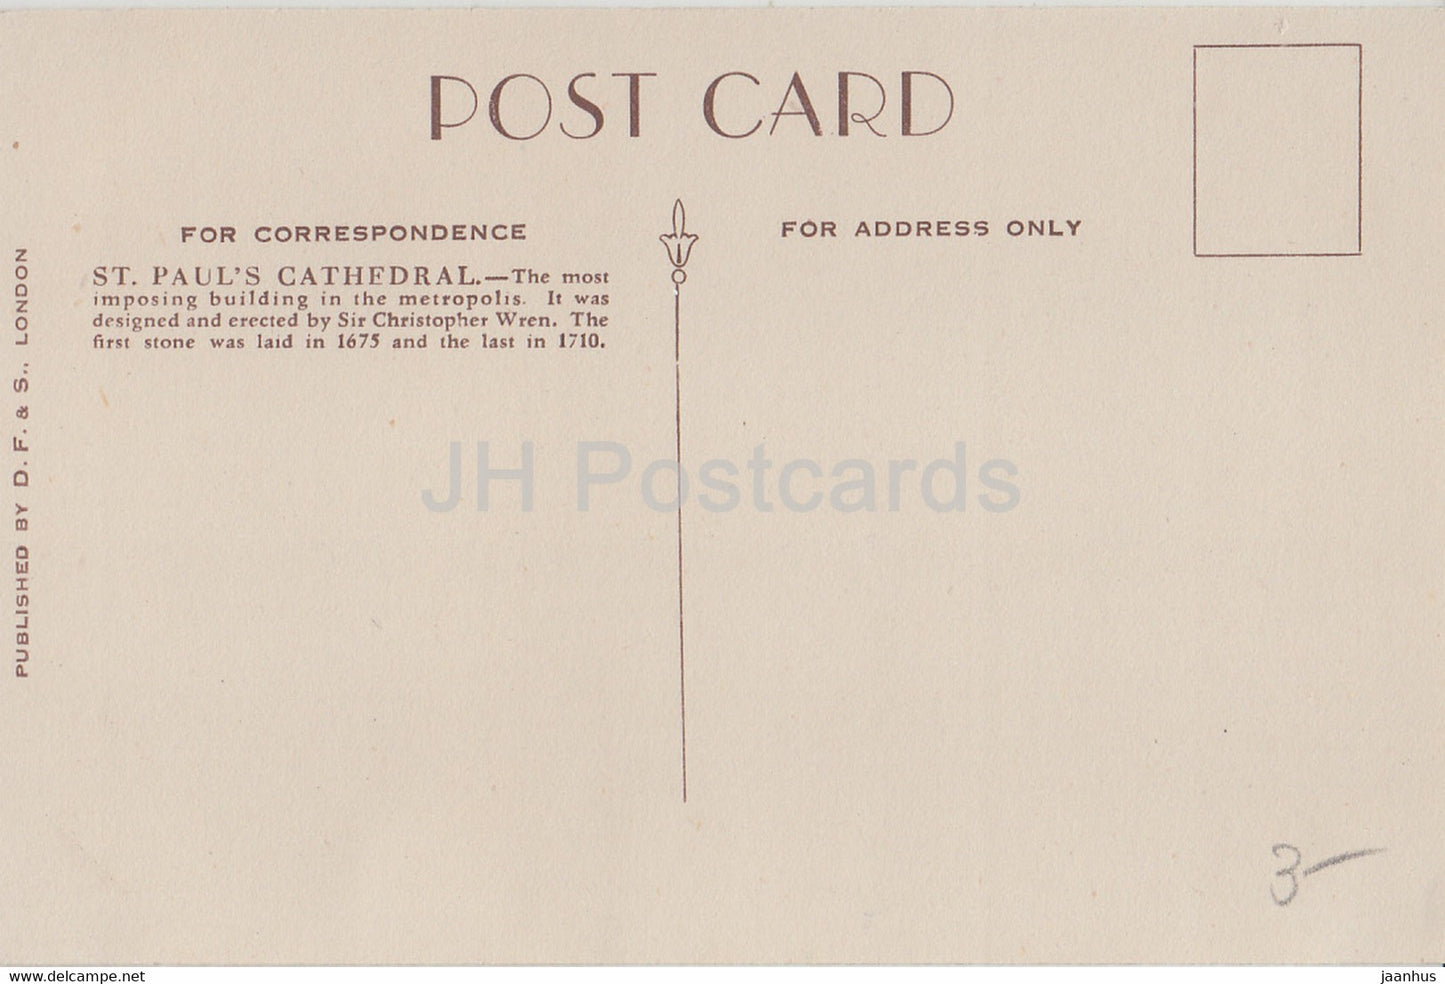 London - St Paul's Cathedral - old postcard - England - United Kingdom - unused